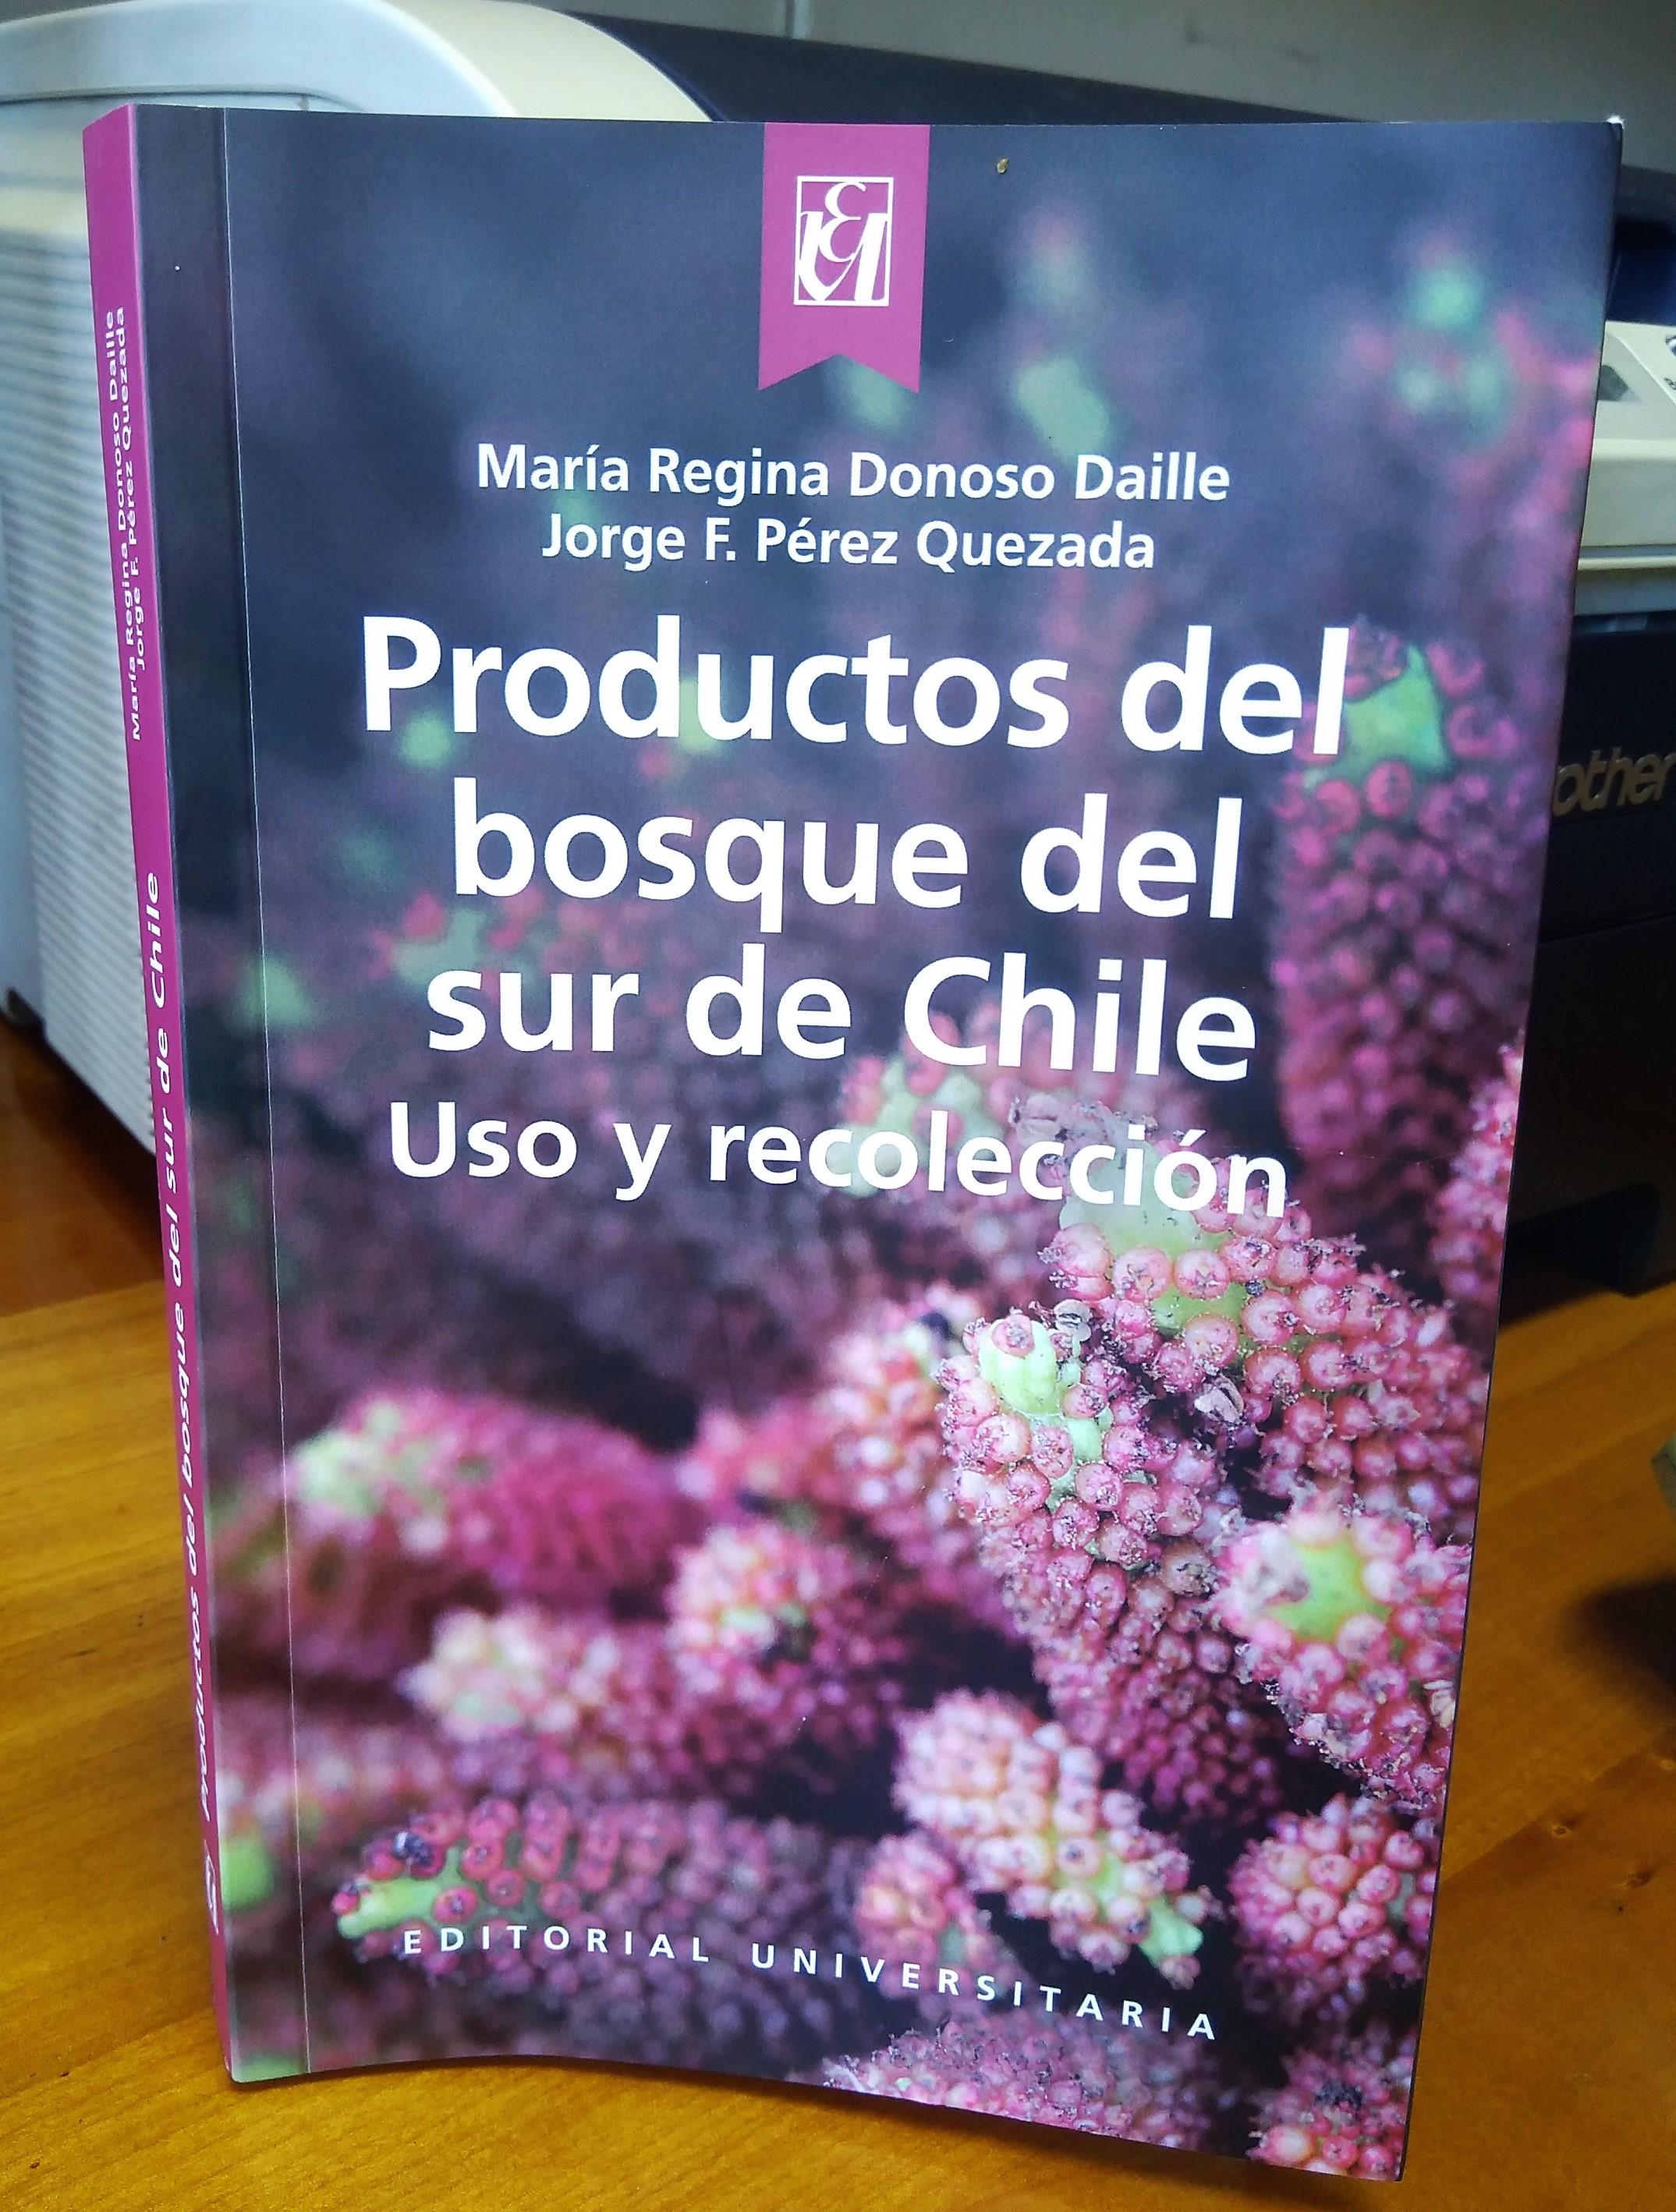 El libro fue publicado por la Editorial Universitaria a través del Fondo Rector Juvenal Hernández de la Universidad de Chile.